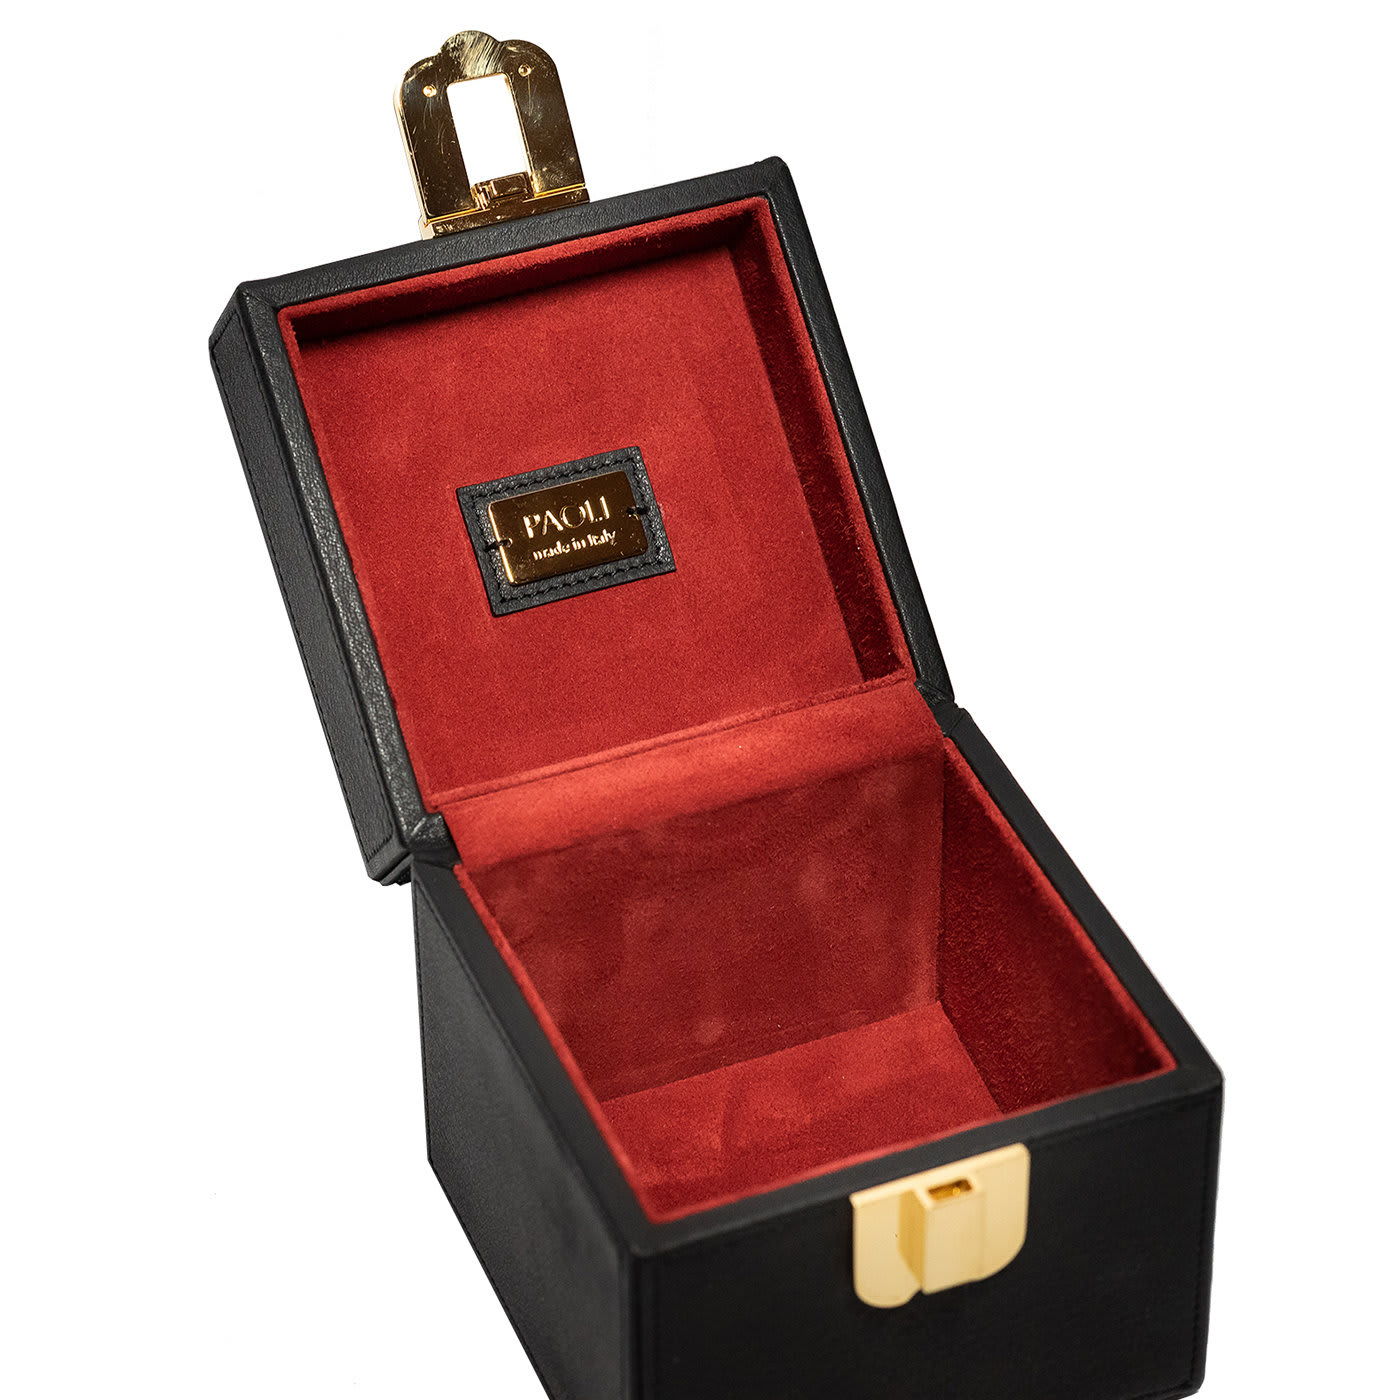 Monaco Black Box Handbag Paoli